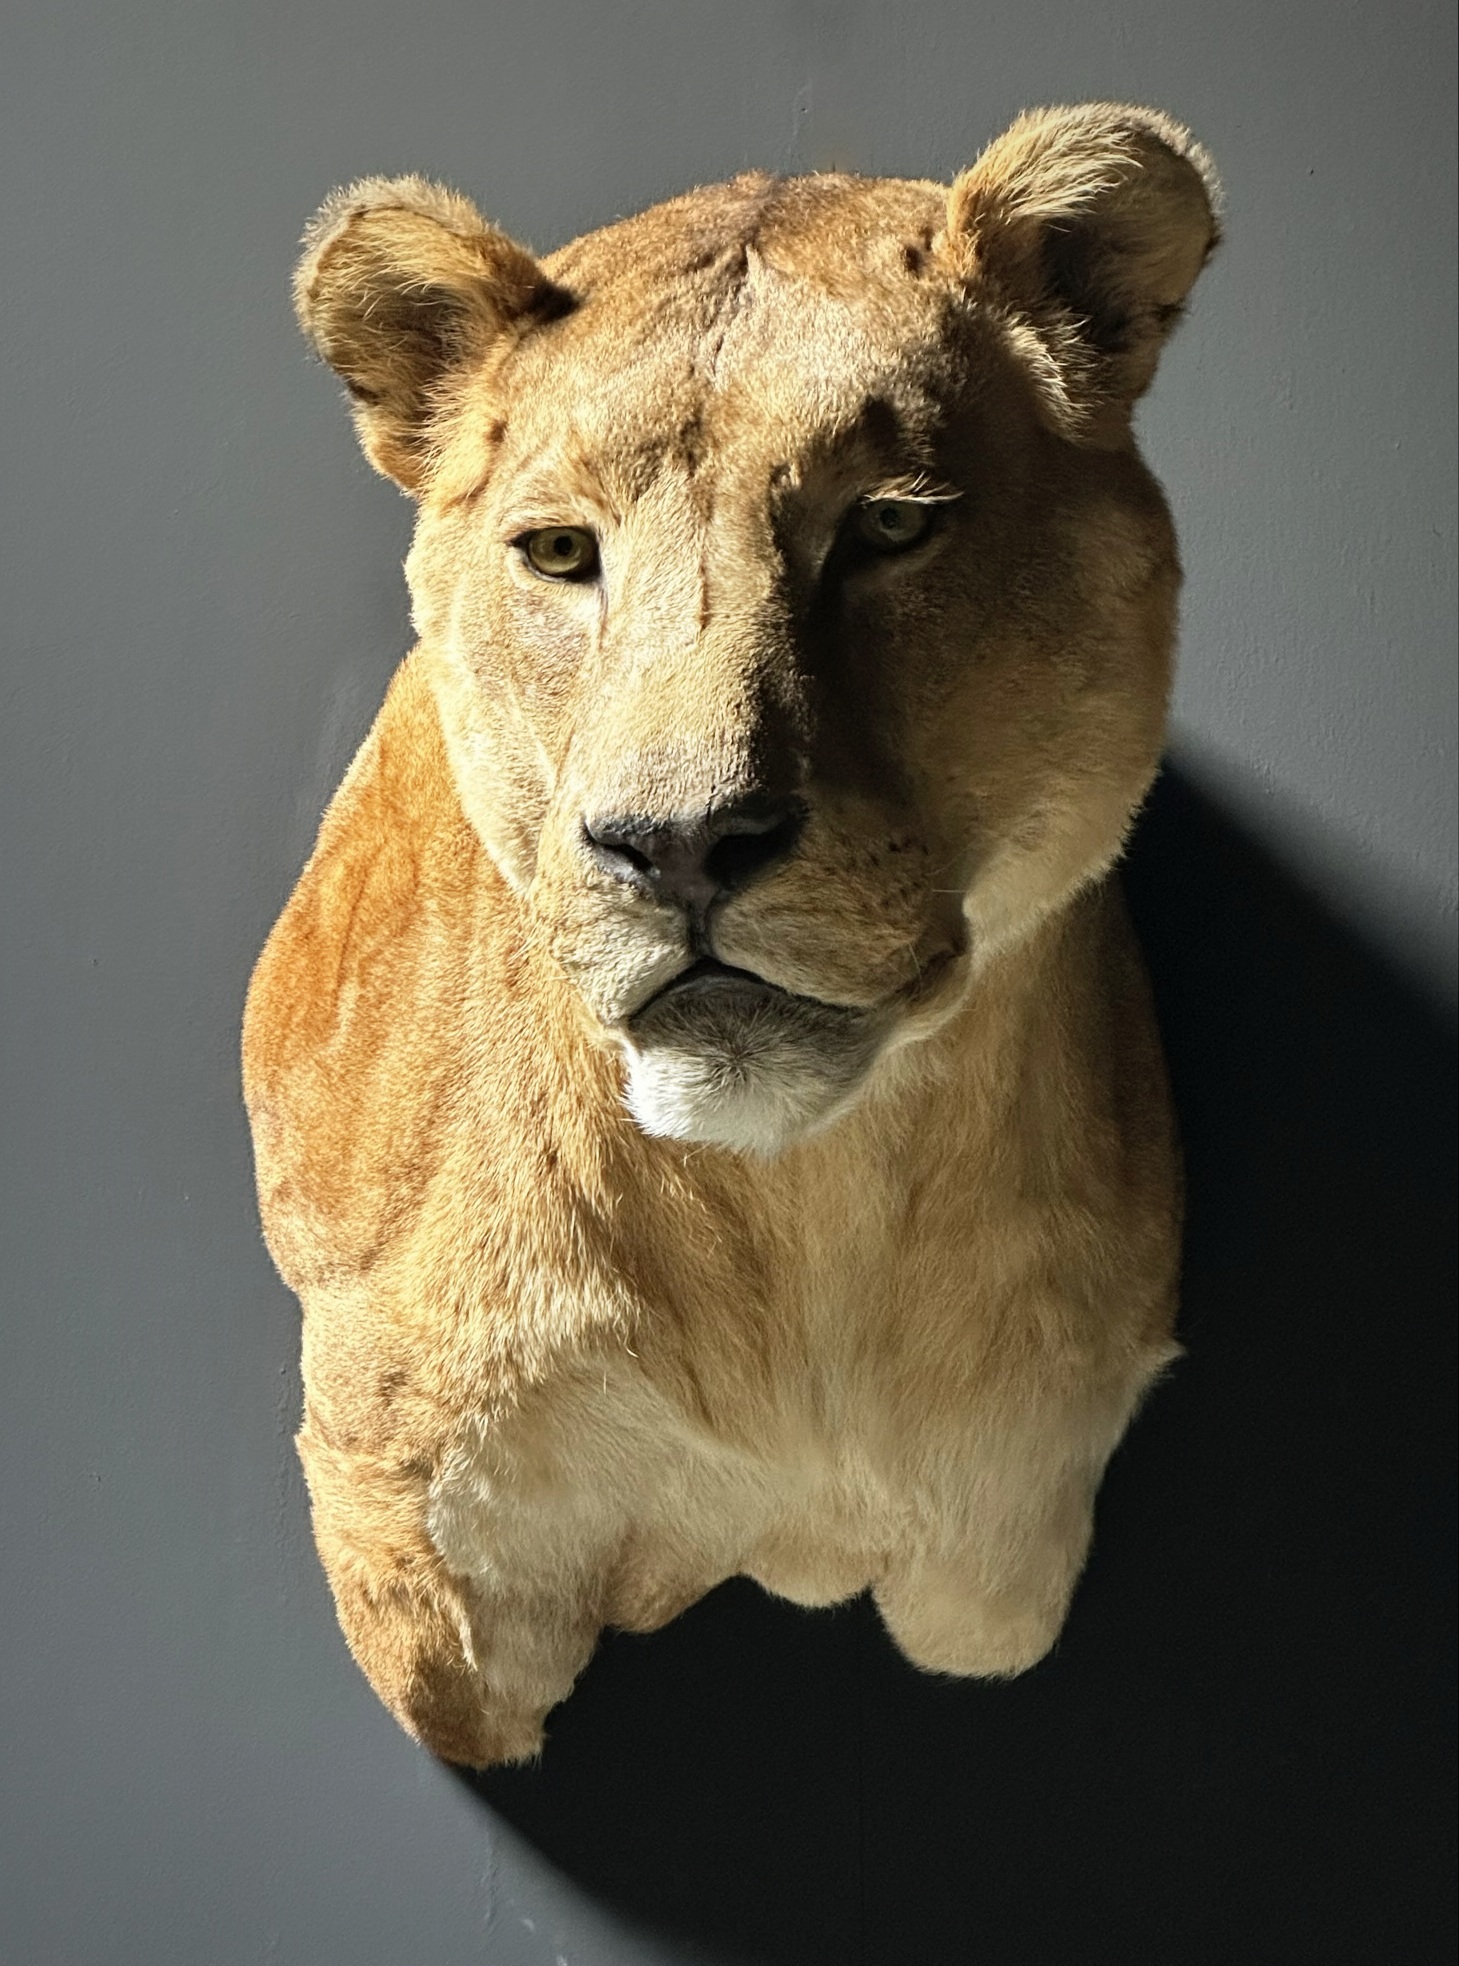 Opgezette kop van een leeuwin